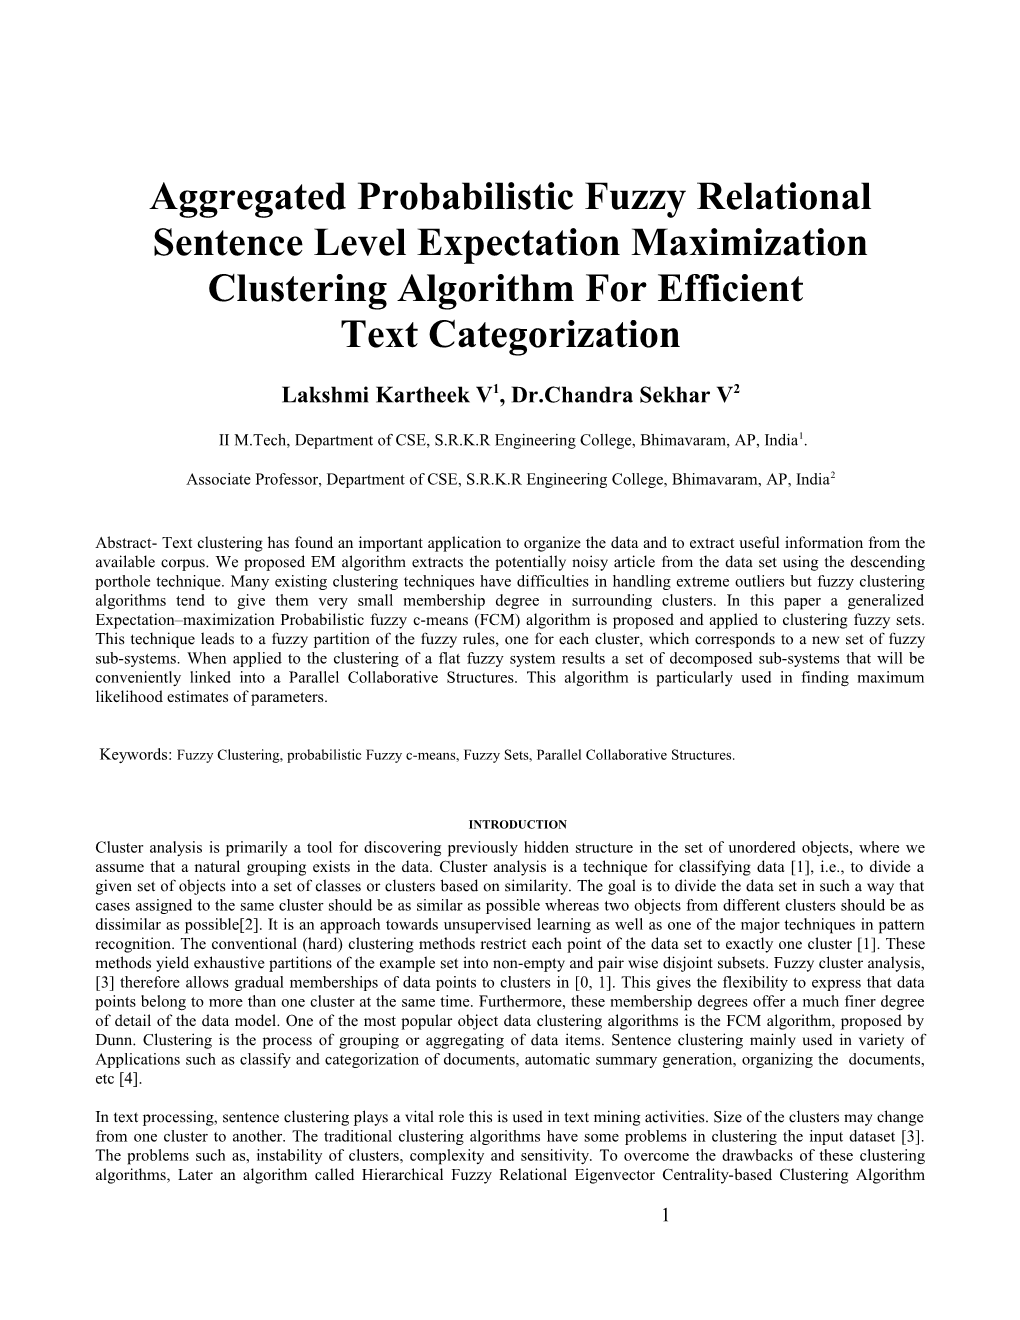 Aggregated Probabilistic Fuzzy Relational Sentence Level Expectation Maximization